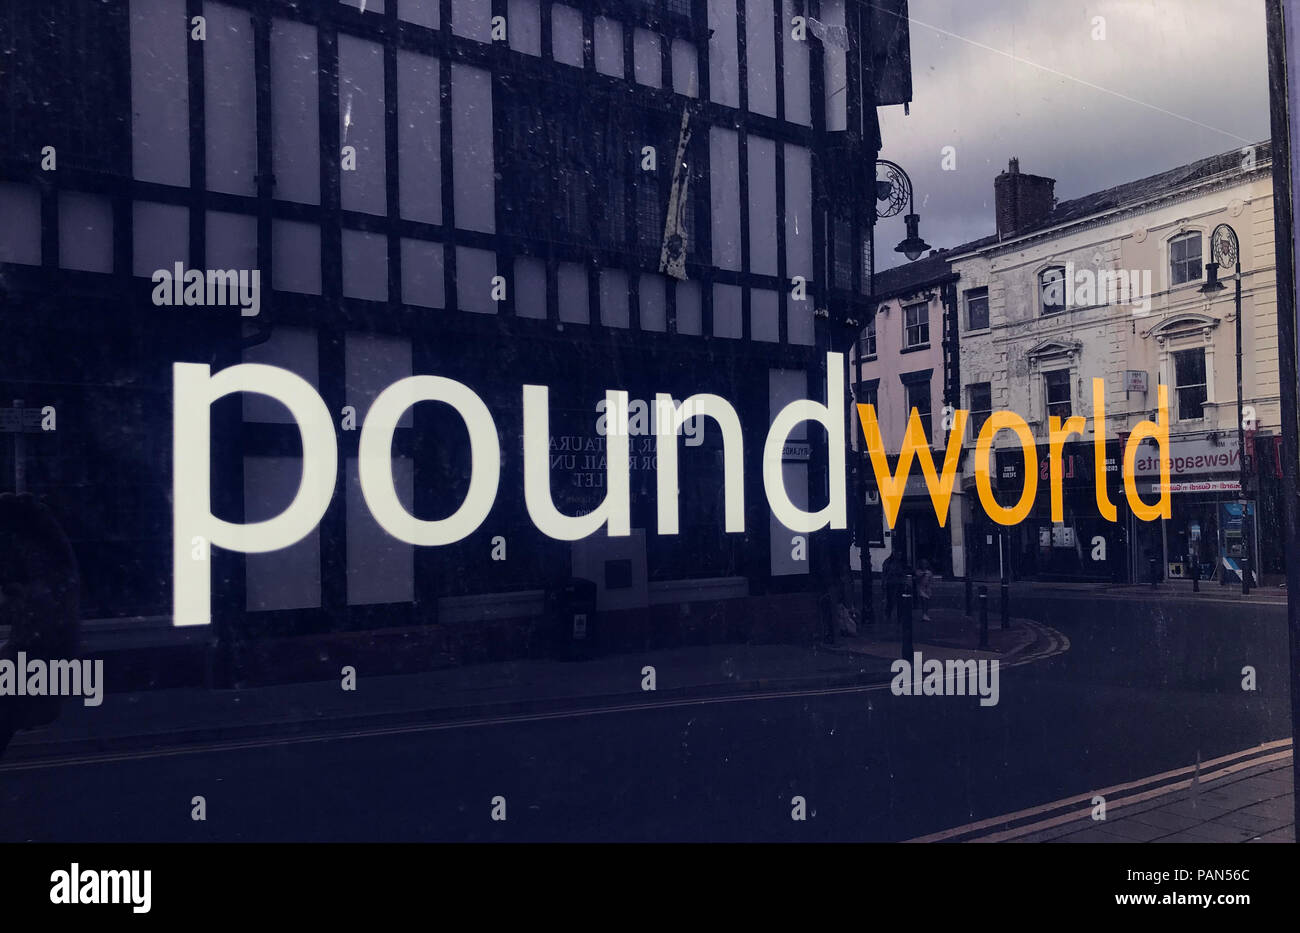 Poundworld store (fermée) de la rue Bridge, Warrington, Cheshire, North West England, UK Banque D'Images